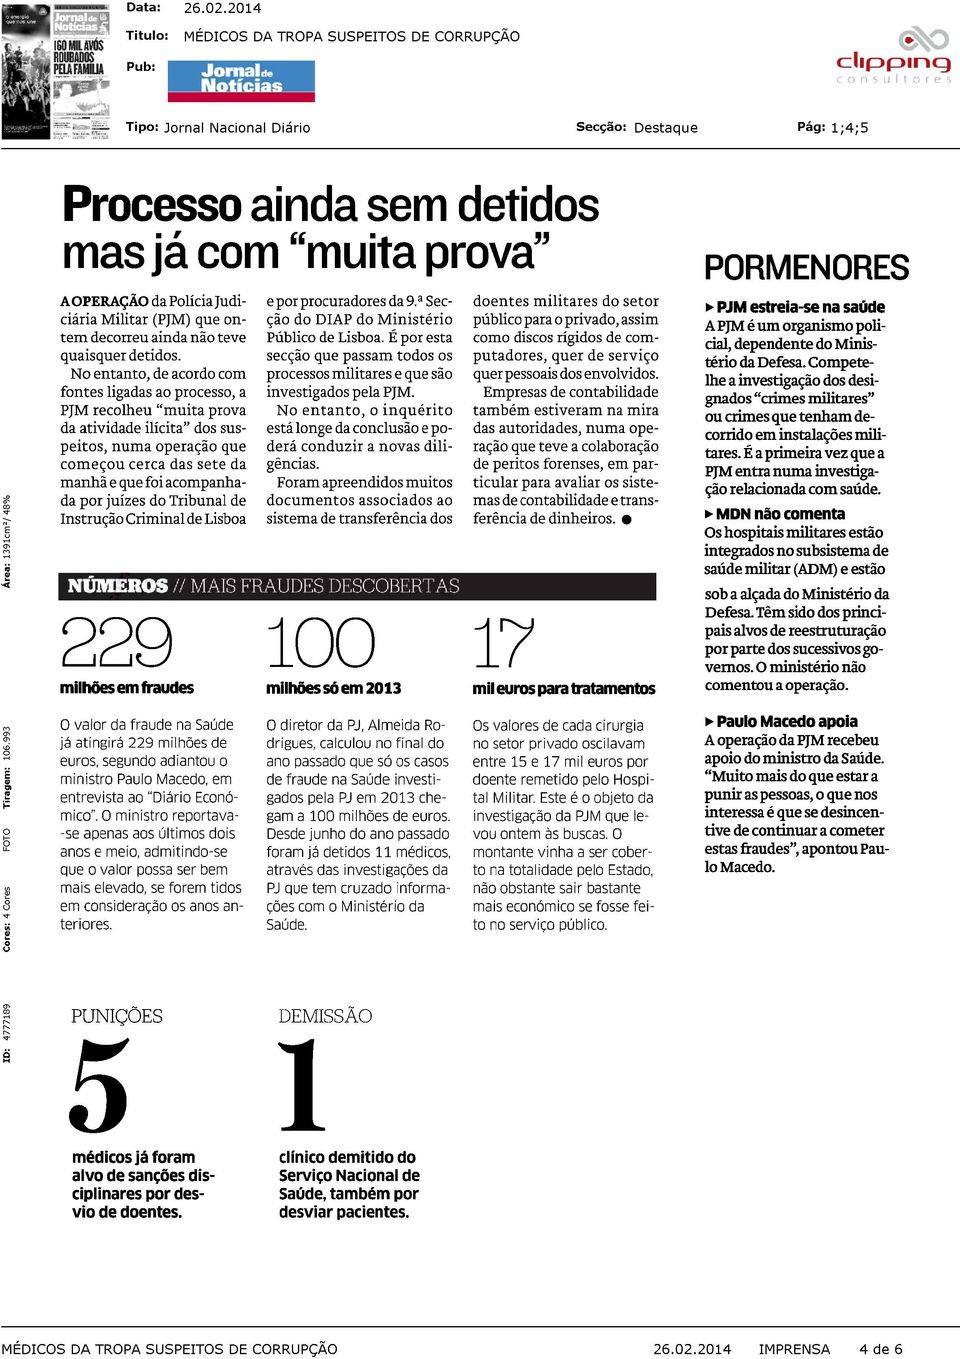 juizes do Tribunal de Instrução Criminal de Lisboa 229 milhões em fraudes e por procuradores da 9. a Secção do DIAP do Ministério Público de Lisboa.